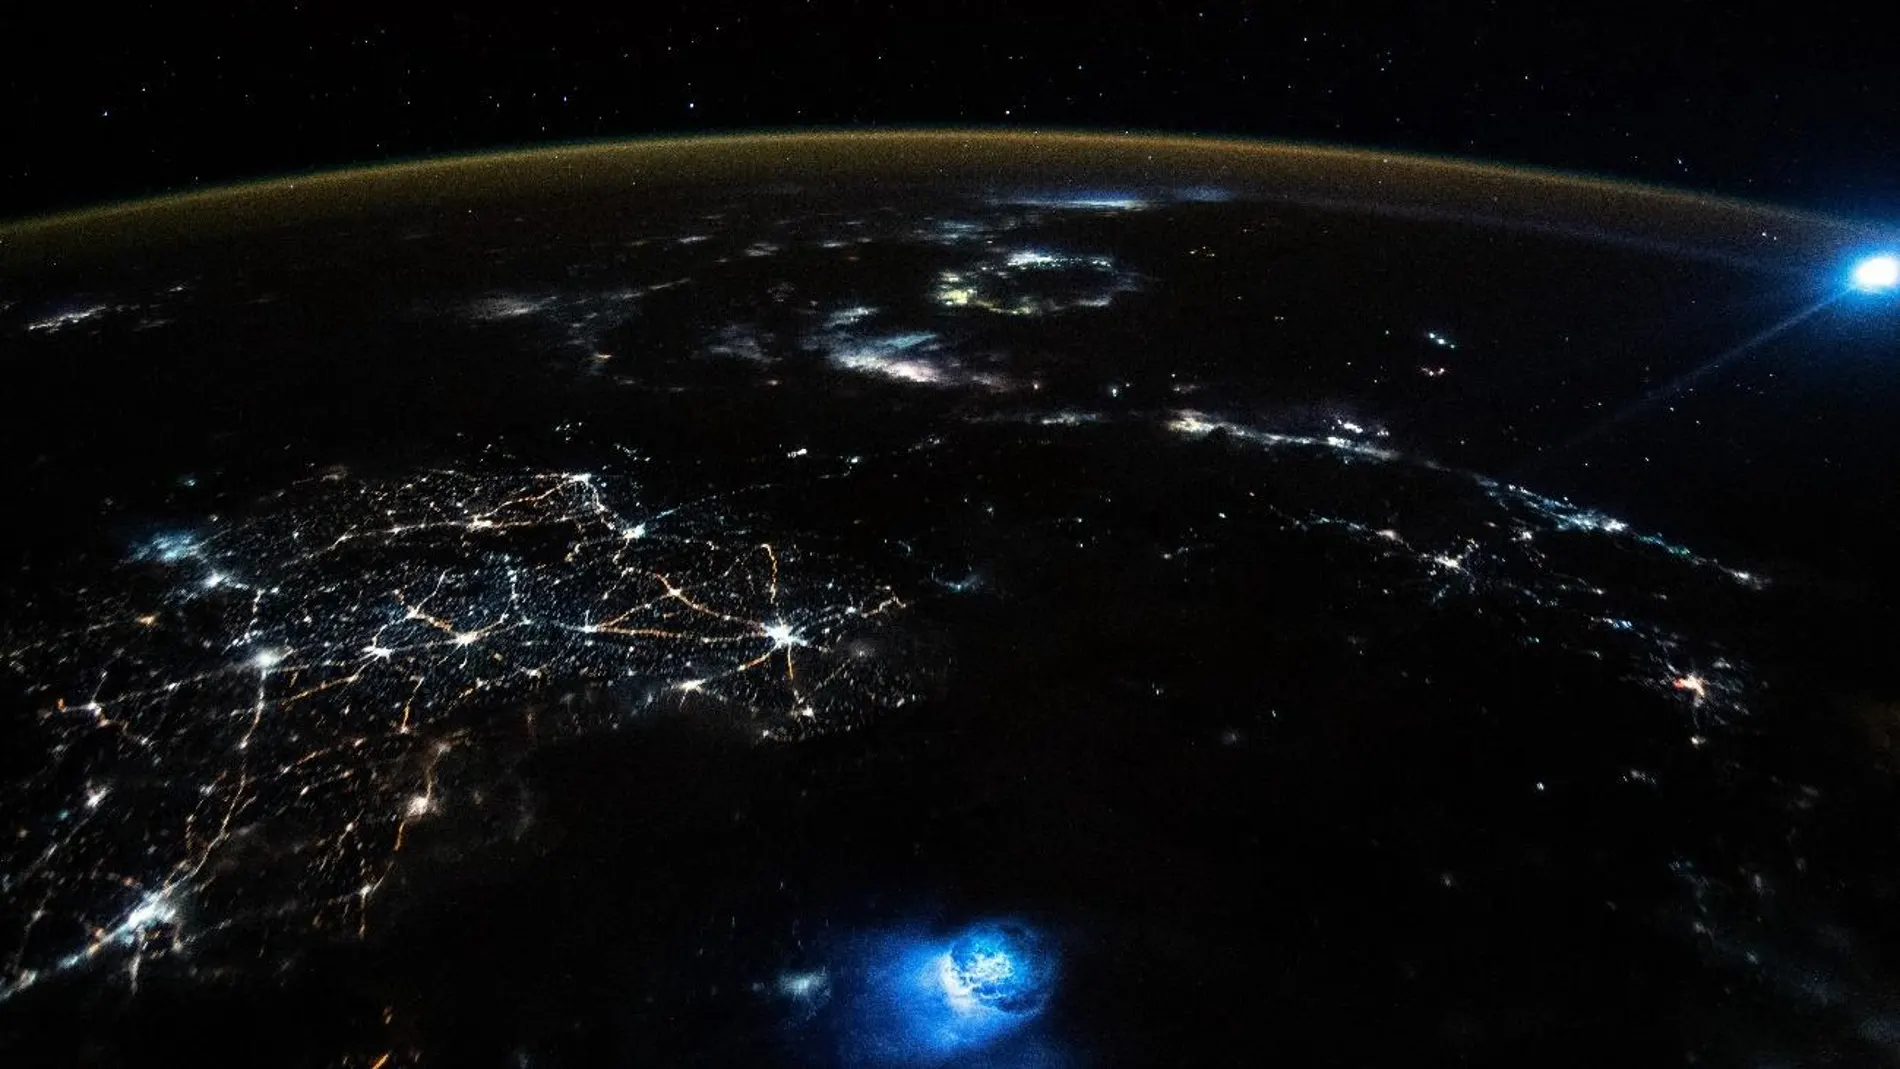 Fotografía tomada desde la Estación Espacial Internacional cuando estaba sobrevolando China el 30 de octubre de 2021